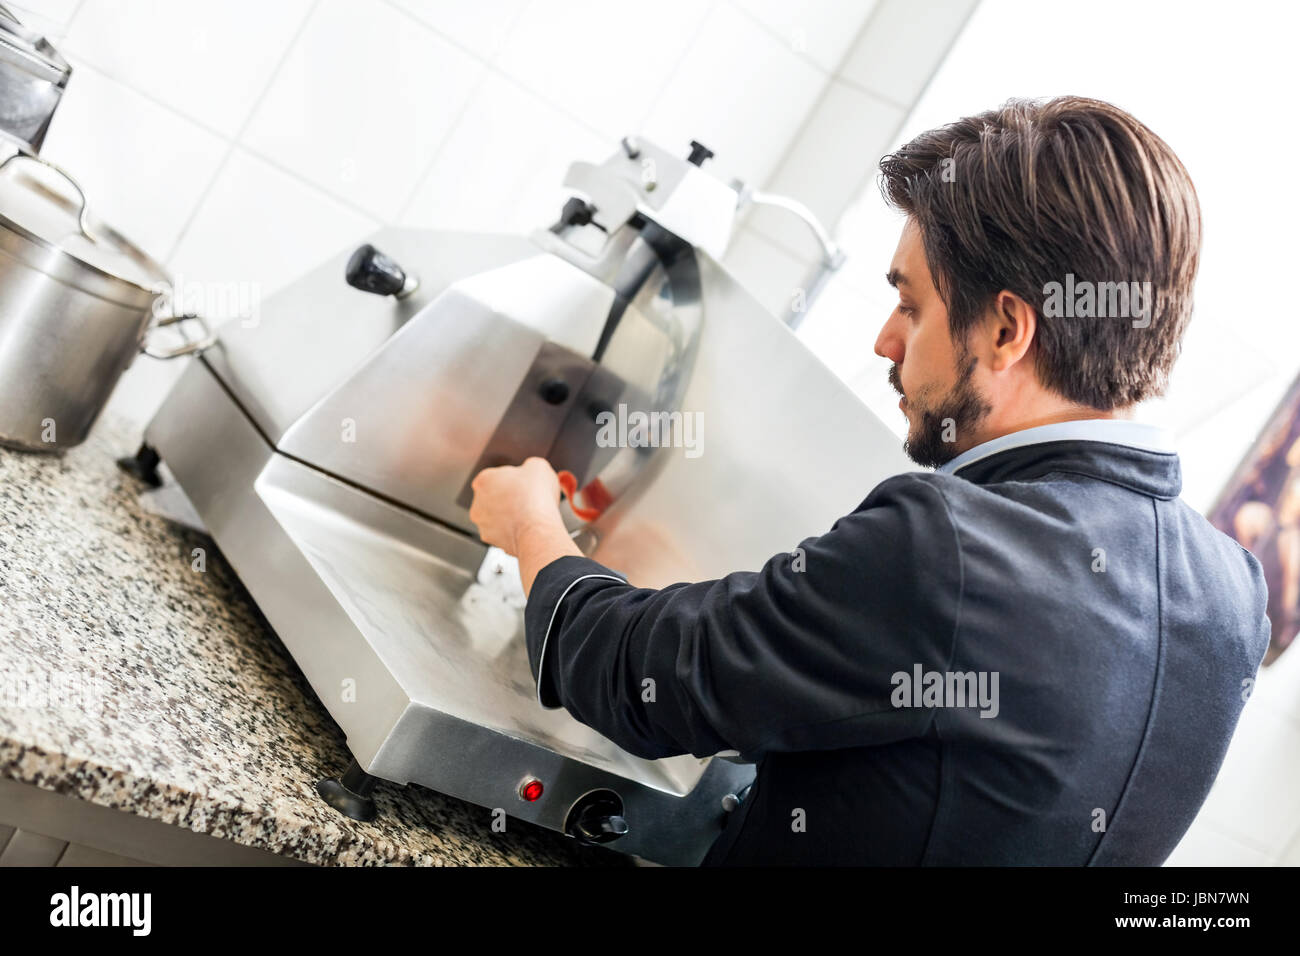 chefkoch schneidet frischen schinken auf der schneidemaschine in der restaurant küche Stock Photo